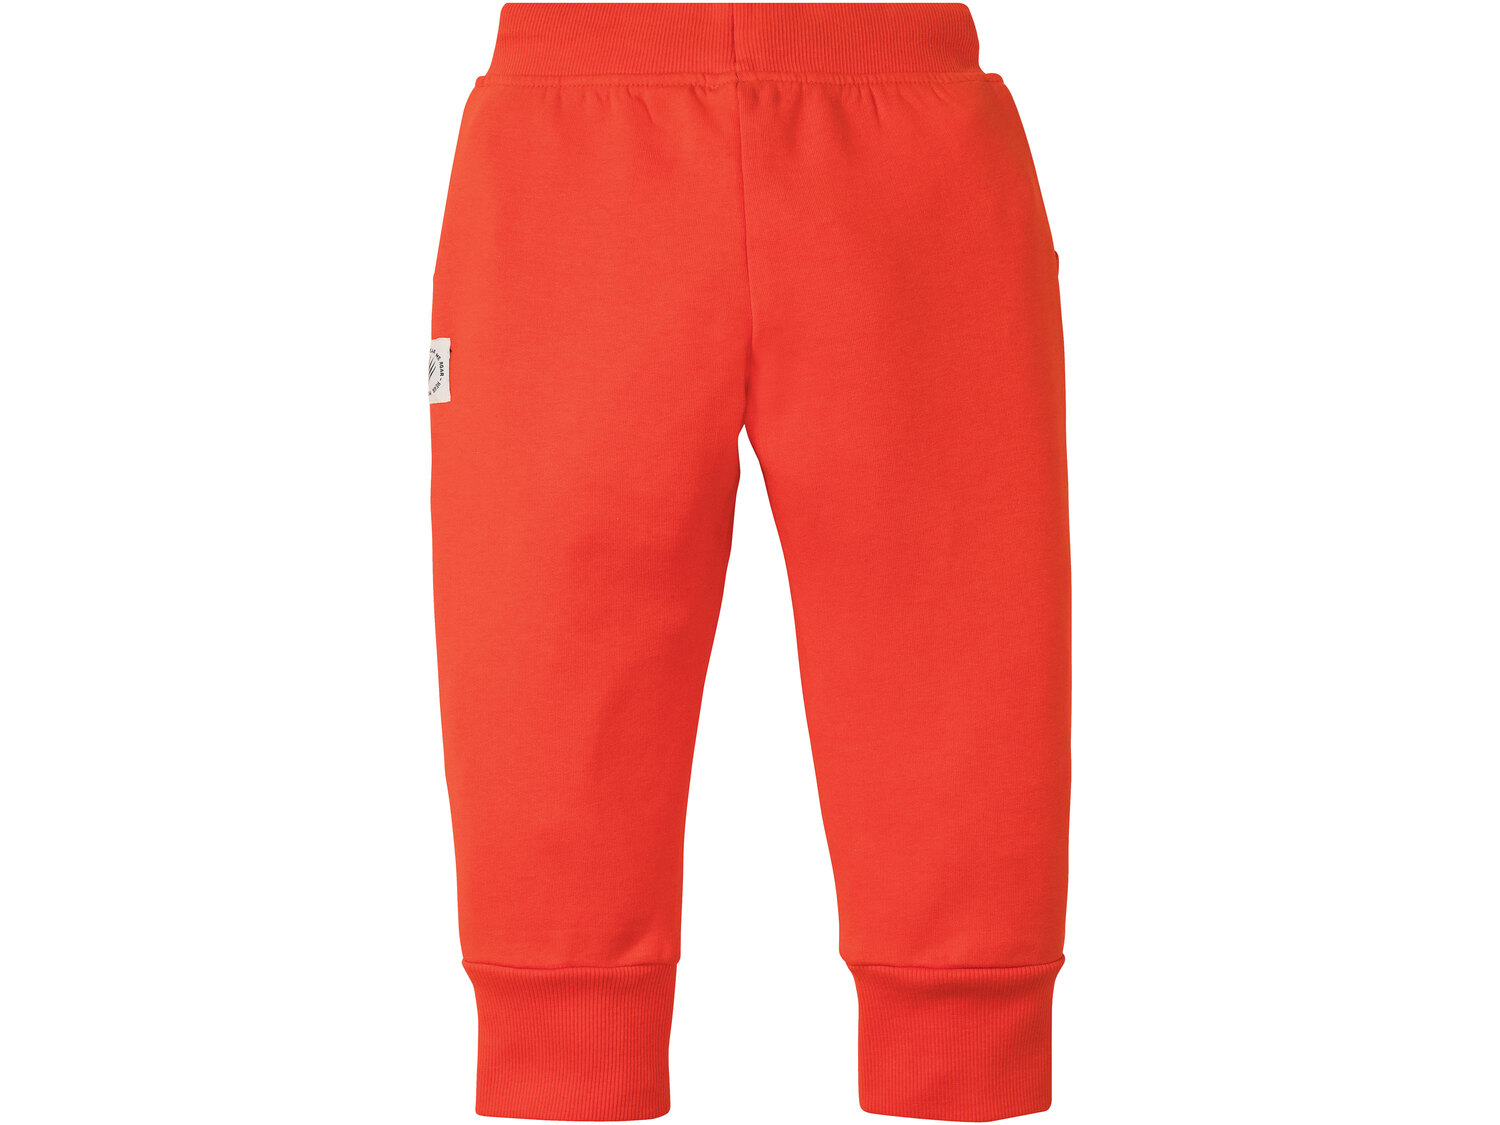 Spodnie dresowe chłopięce , cena 17,99 PLN 
- 80% bawełny, 20% poliestru
- rozmiary: ...